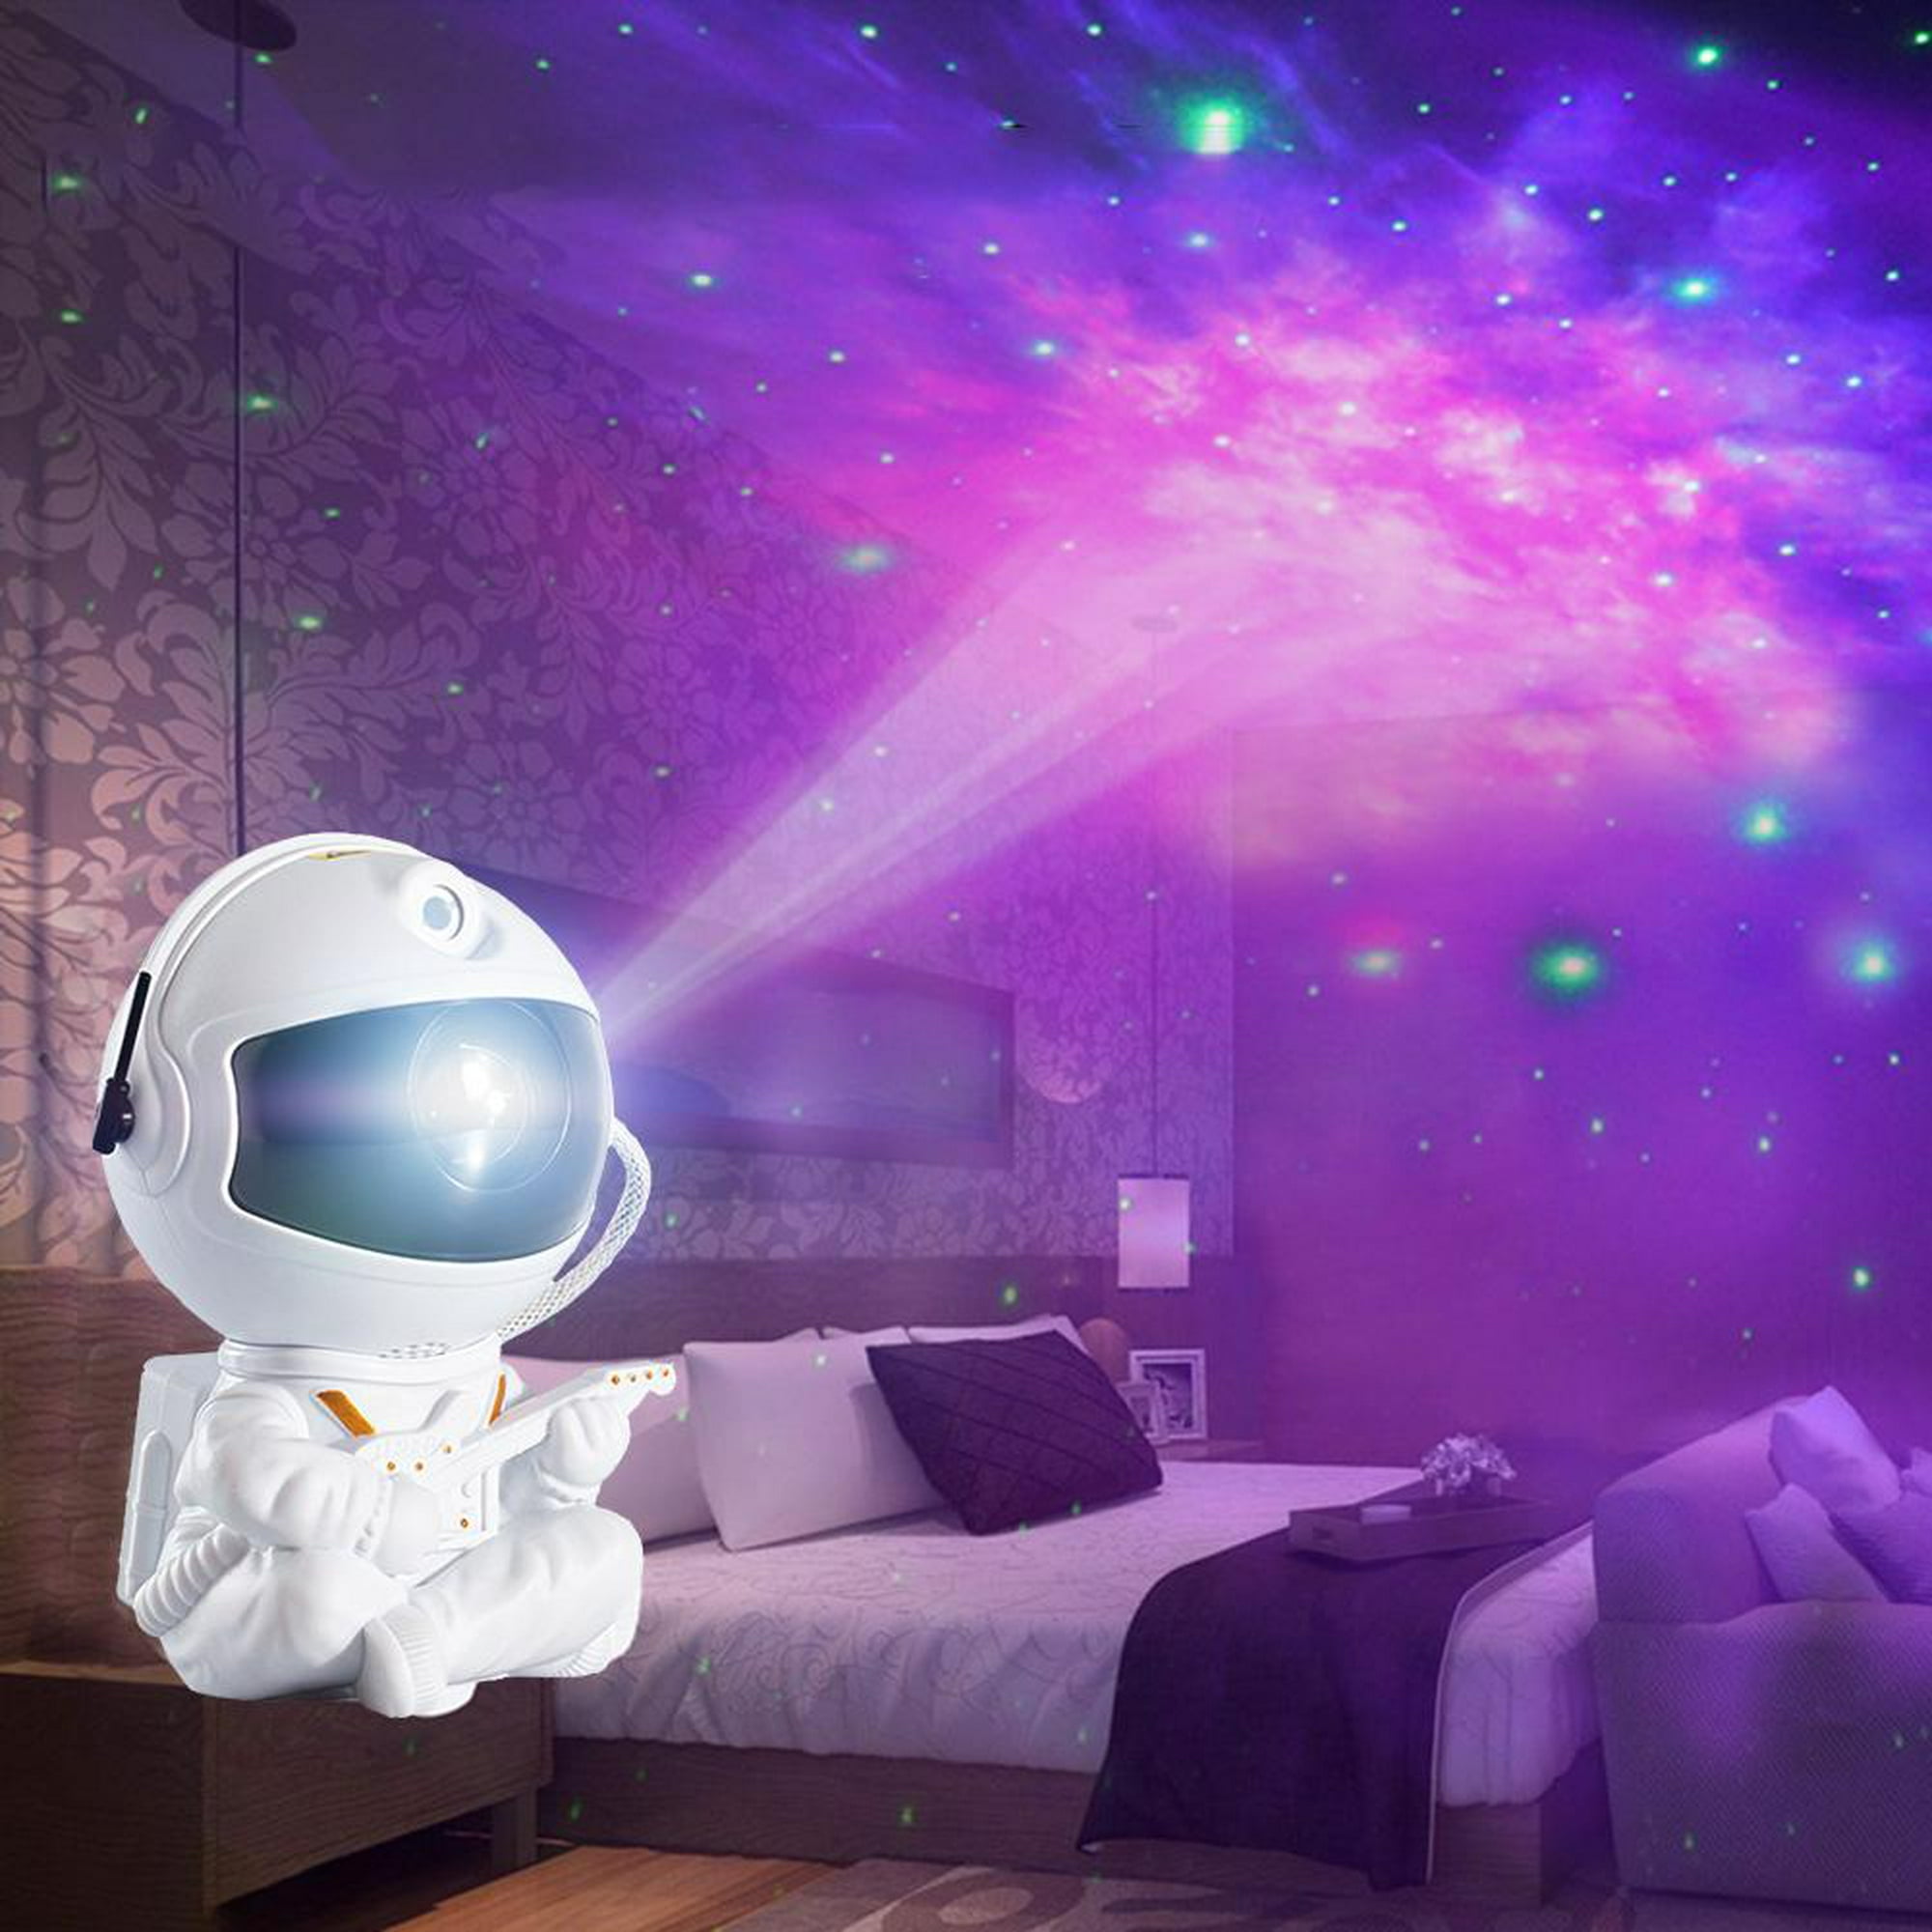 Lampara Proyector Estrellas Bebe, Proyector de estrellas de luz, proyector  LED, proyector de luz nocturna para niños, 9 modos de luz coloridos,  Astronauta Proyector Galaxy con Reproductor de Música : :  Iluminación